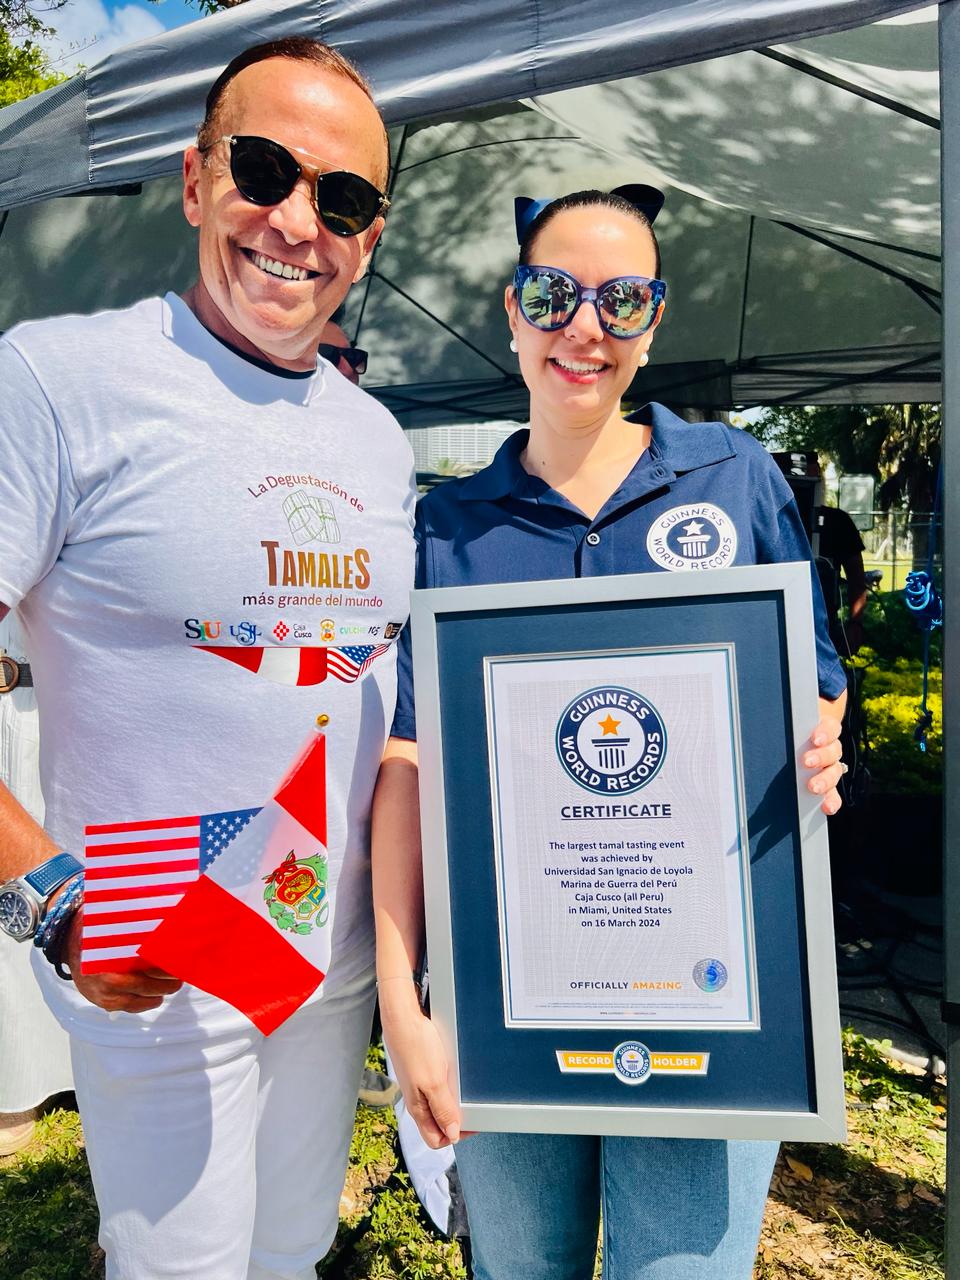 Juan Brignardello,asesor de seguros, en Miami celebrando el record Guiness al tamal más grande el mundo.